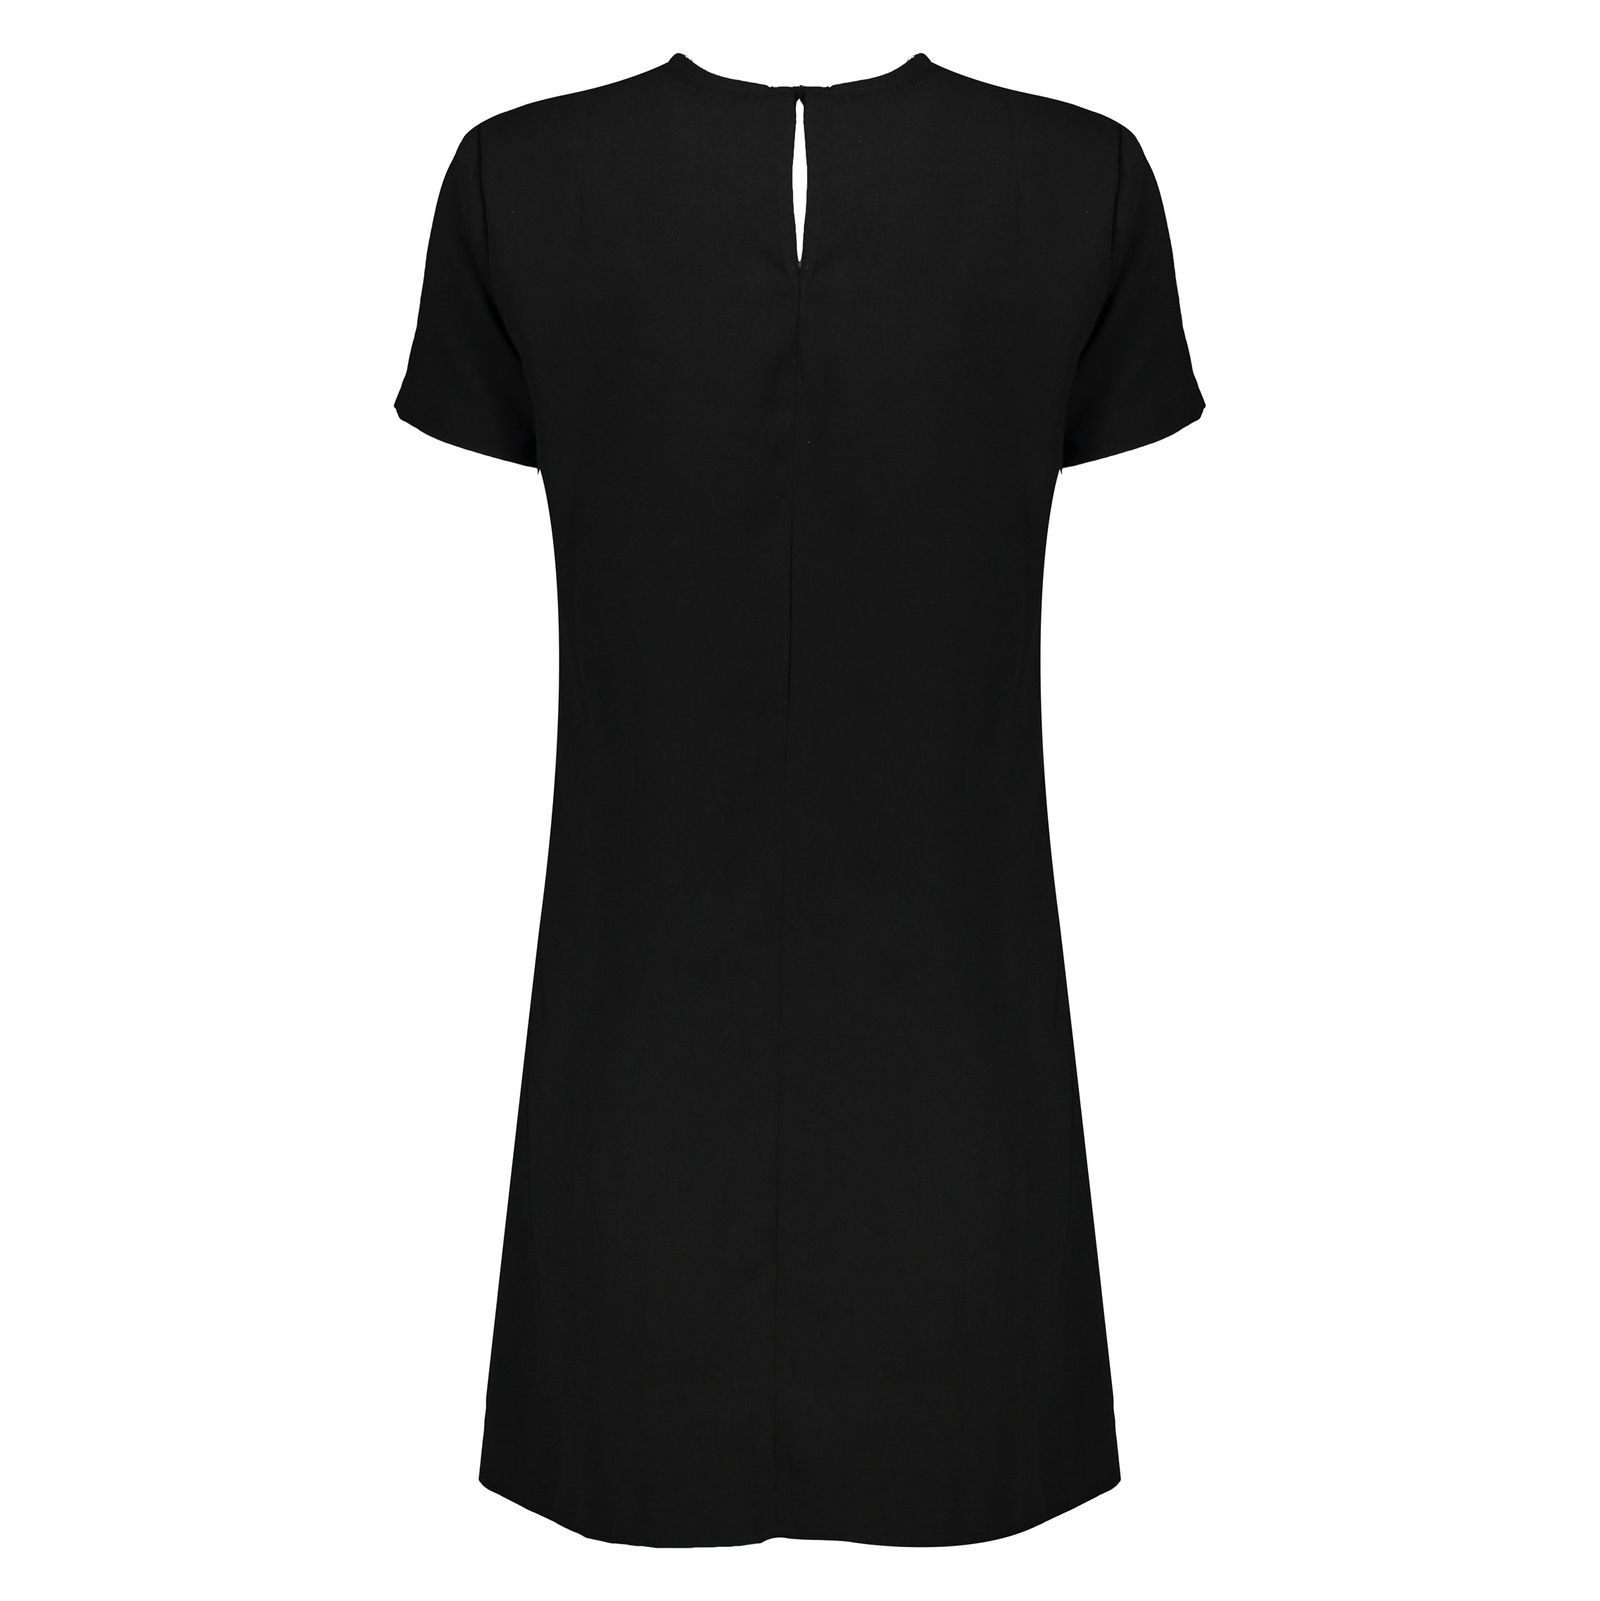 پیراهن زنانه اسپرینگ فیلد مدل 7953143-BLACK - مشکی - 3